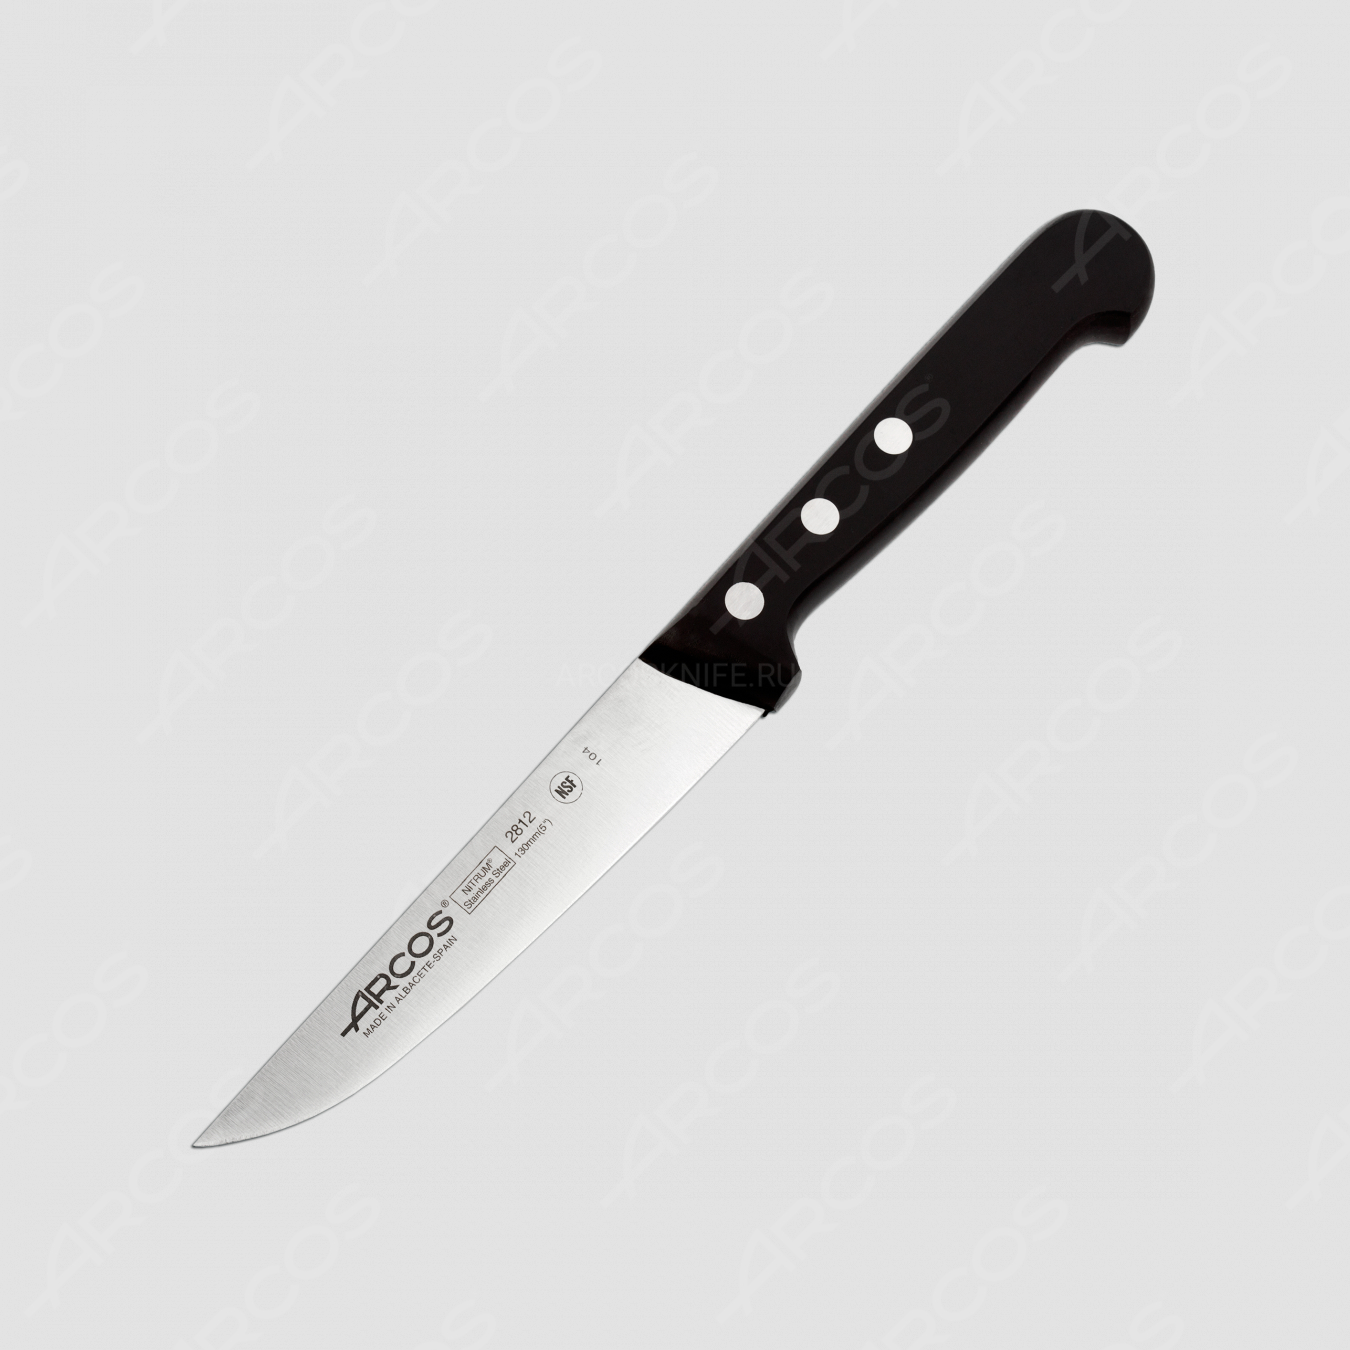 Нож кухонный 13 см, серия Universal, ARCOS, Испания